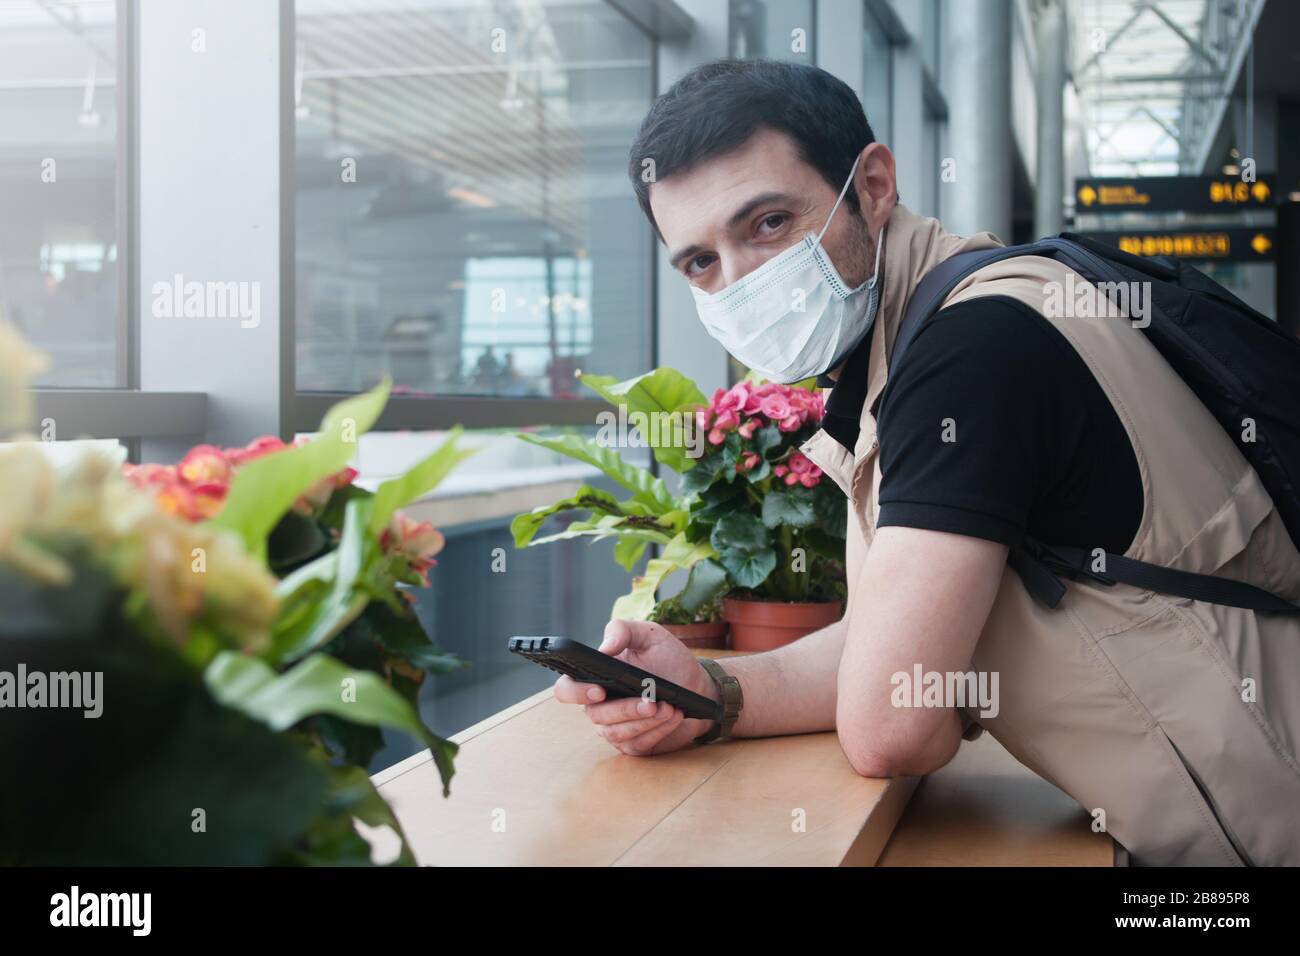 Junger kaukasischer Mann, der eine medizinische Maske trägt und mit seinem Handy entspannt auf sein Licht in der Abflughalle am Flughafen wartet Stockfoto